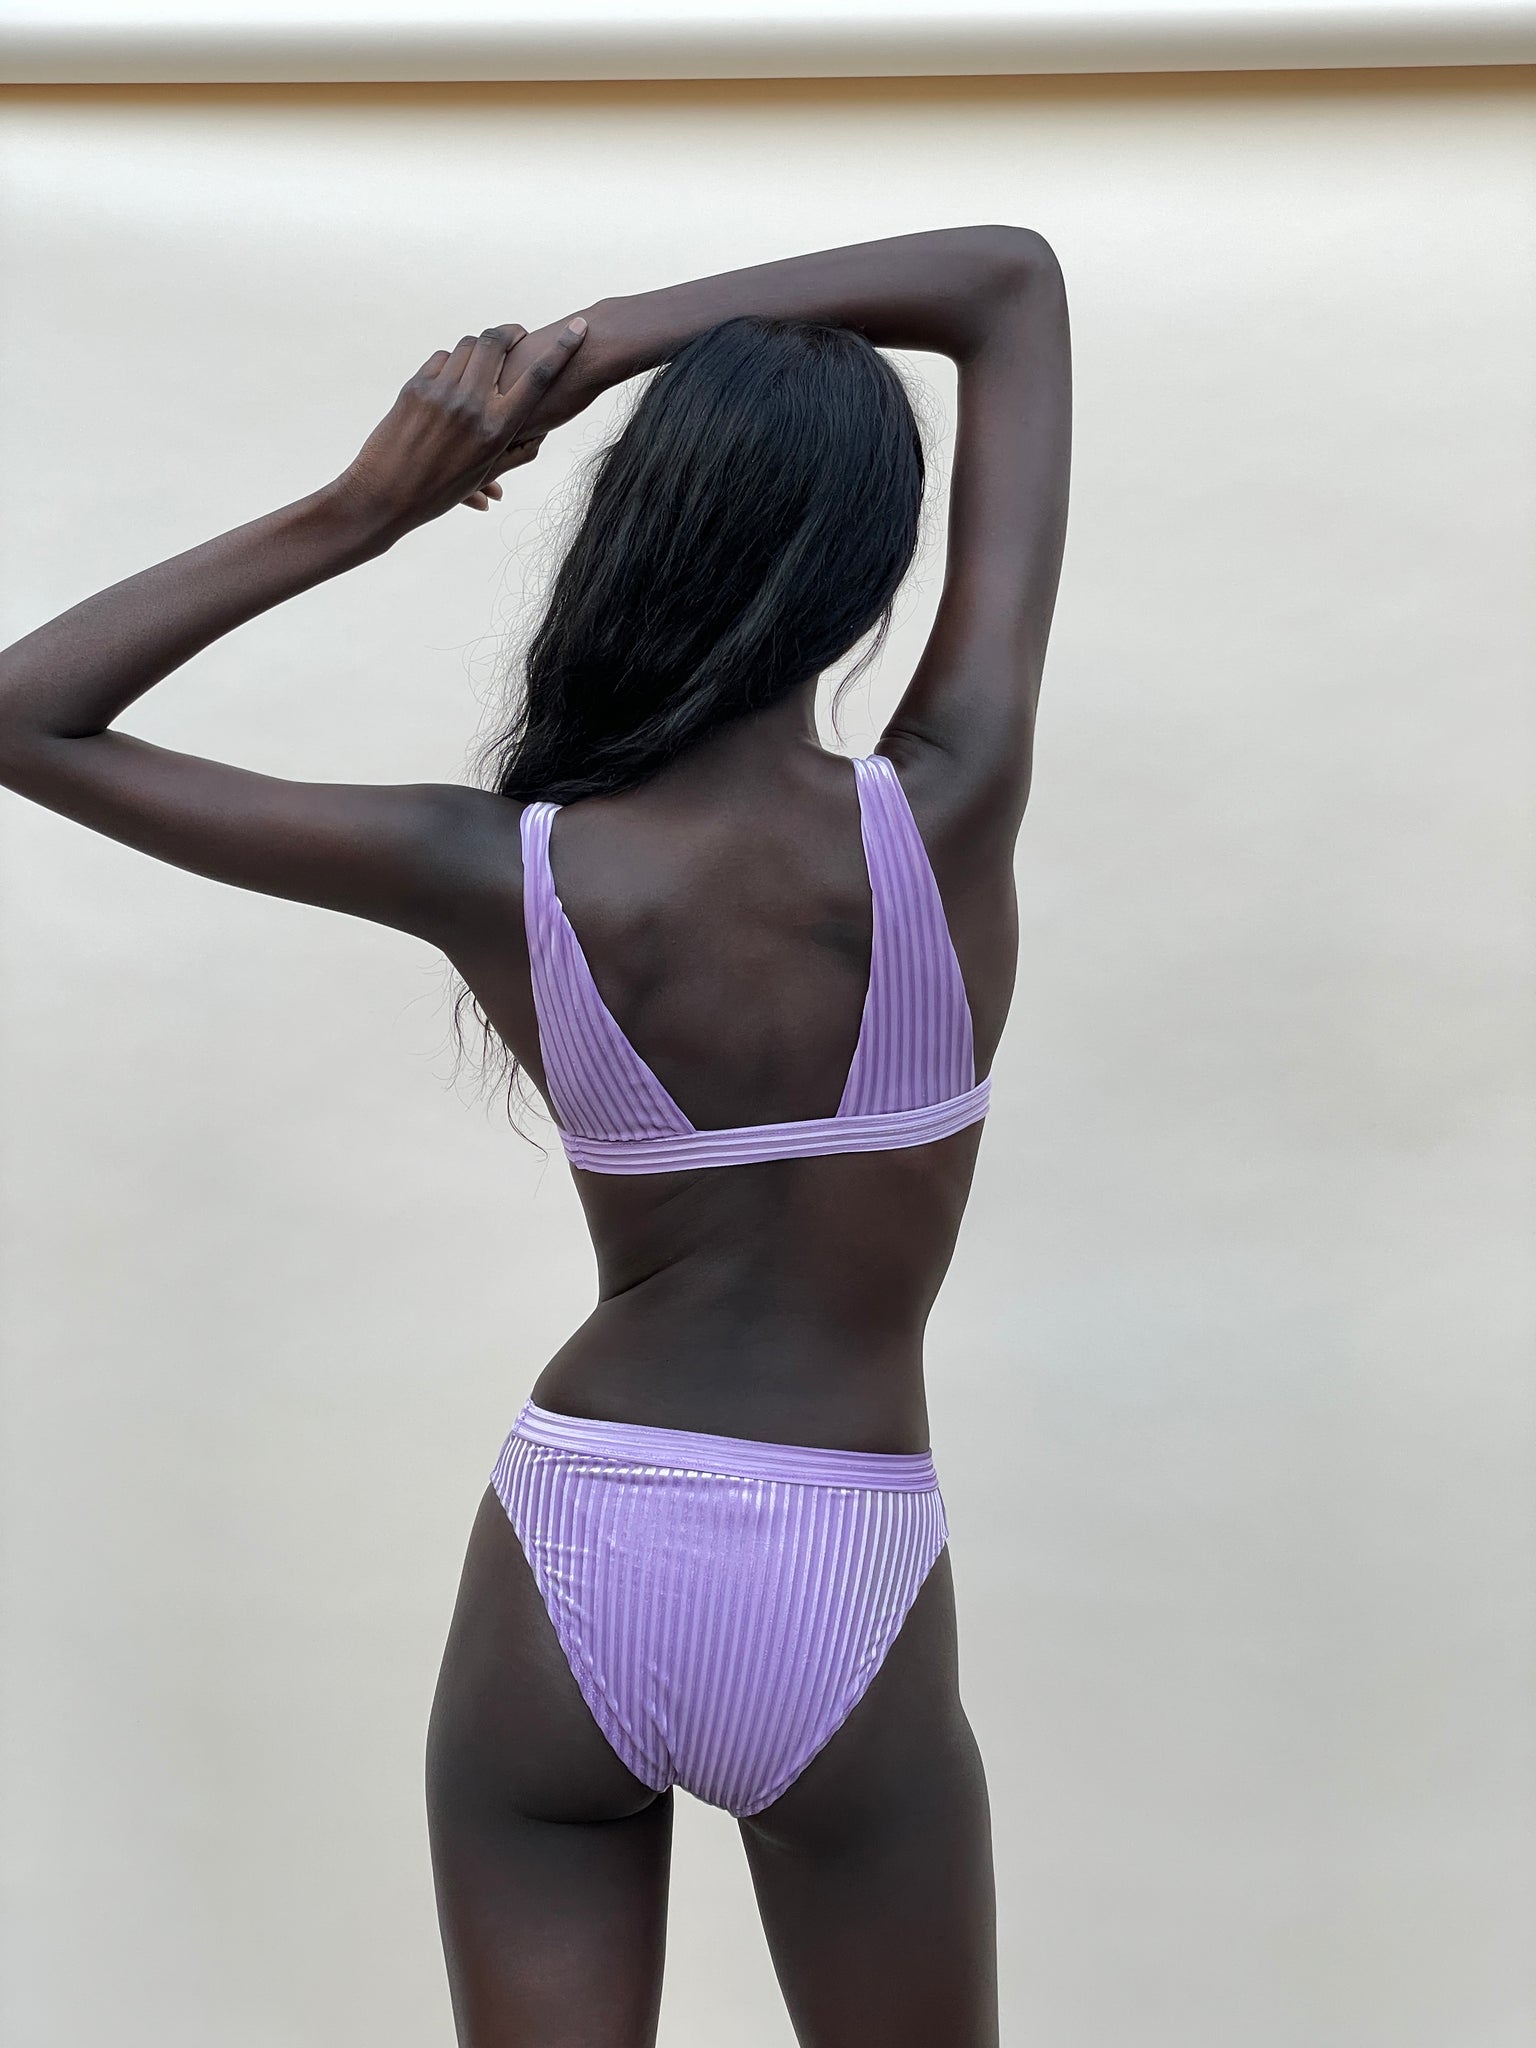 The Lavender Velvet Swim Top